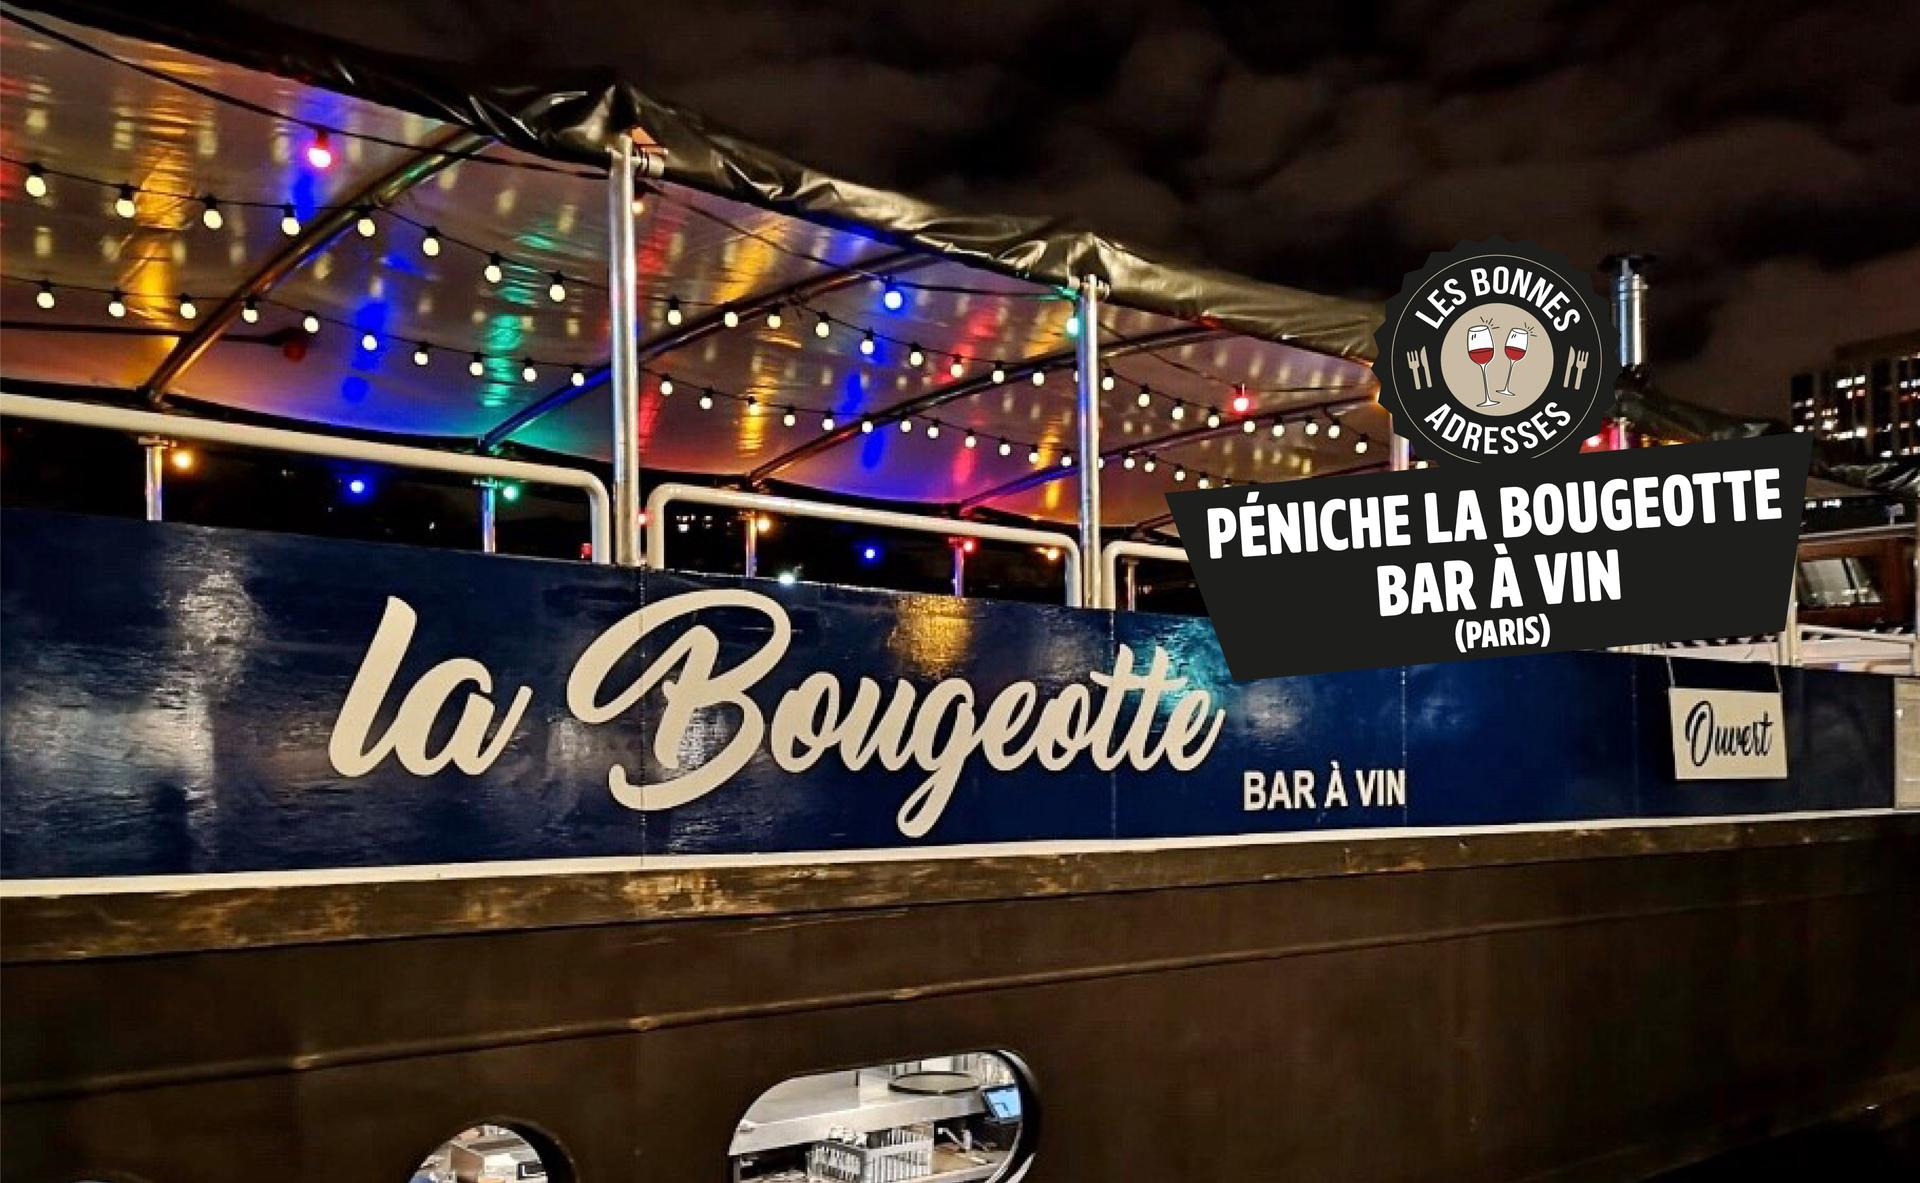 La Bougeotte, une péniche bar à vin entre Paris et Dijon